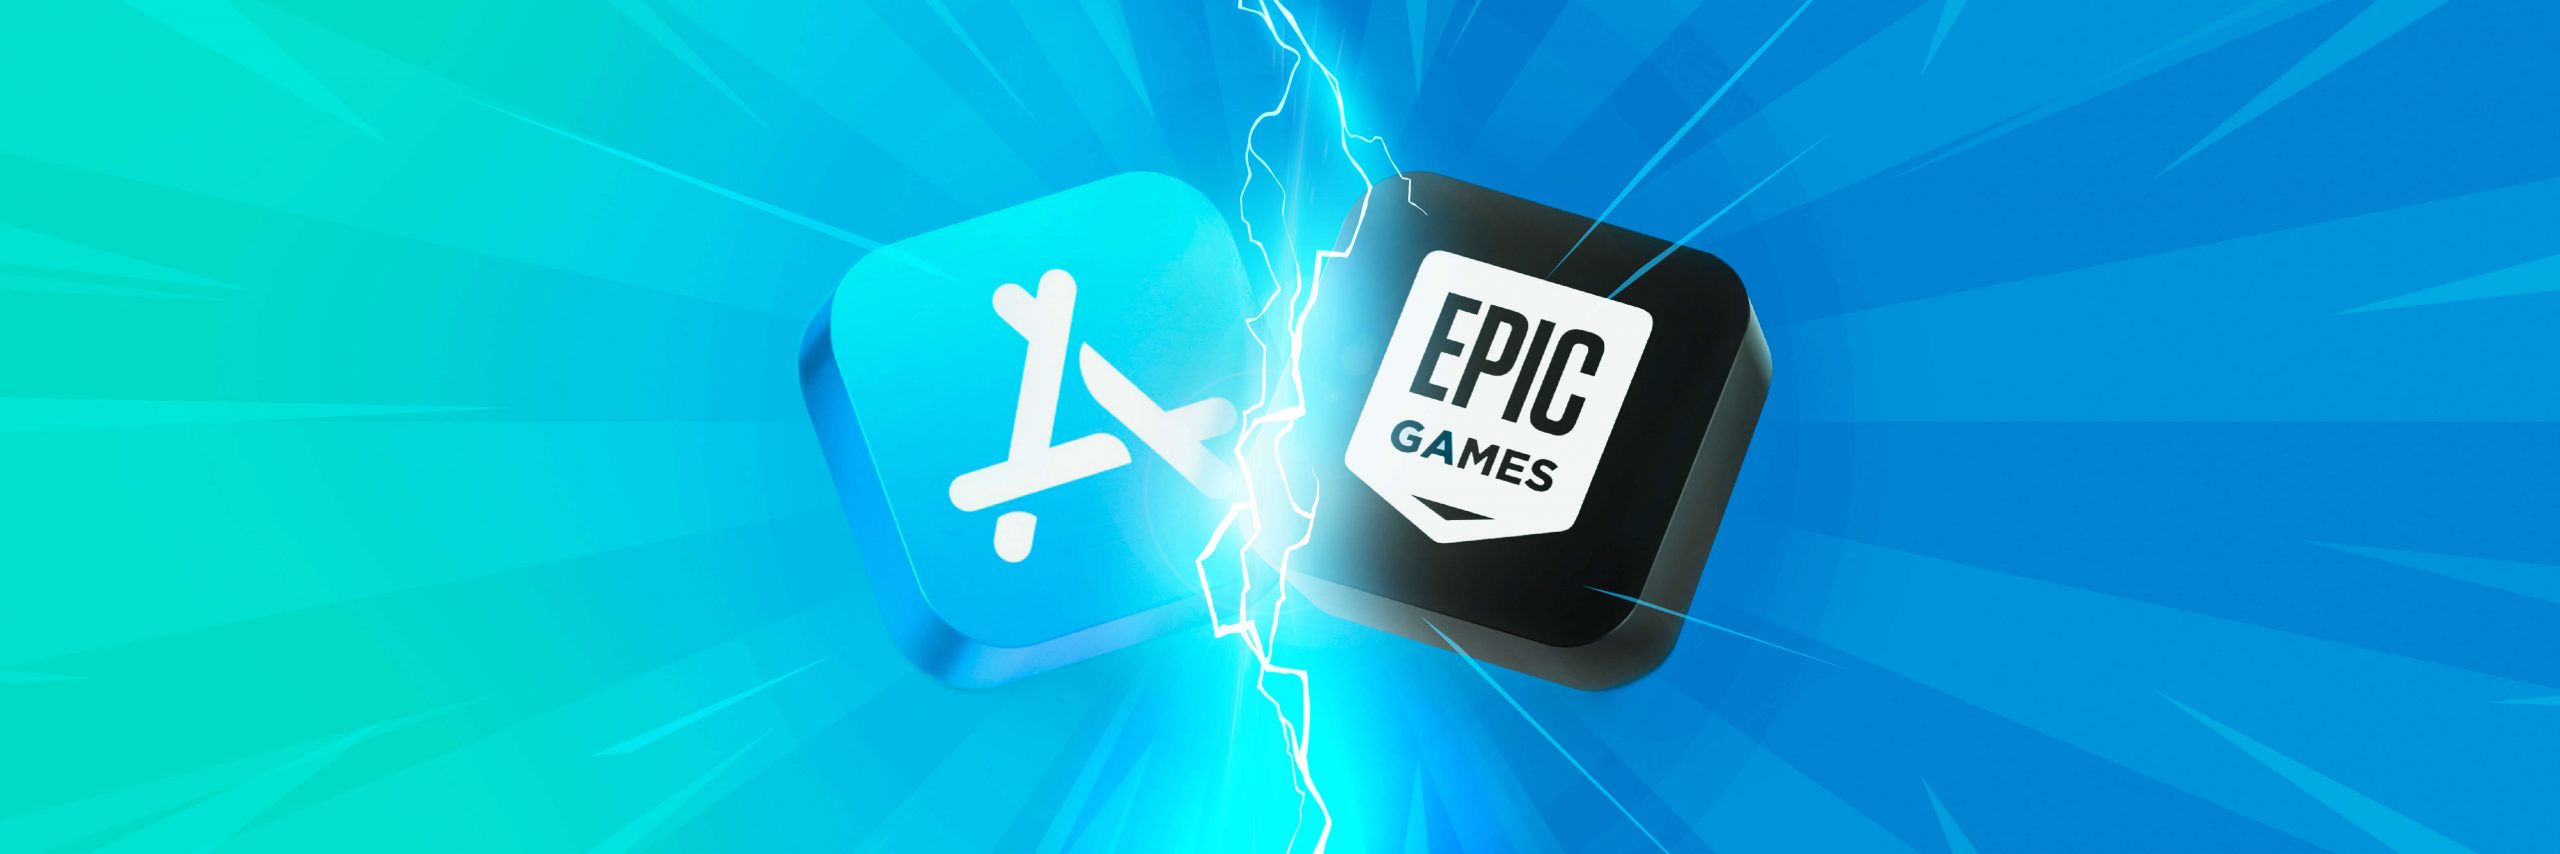 Apple Epic Games lawsuit